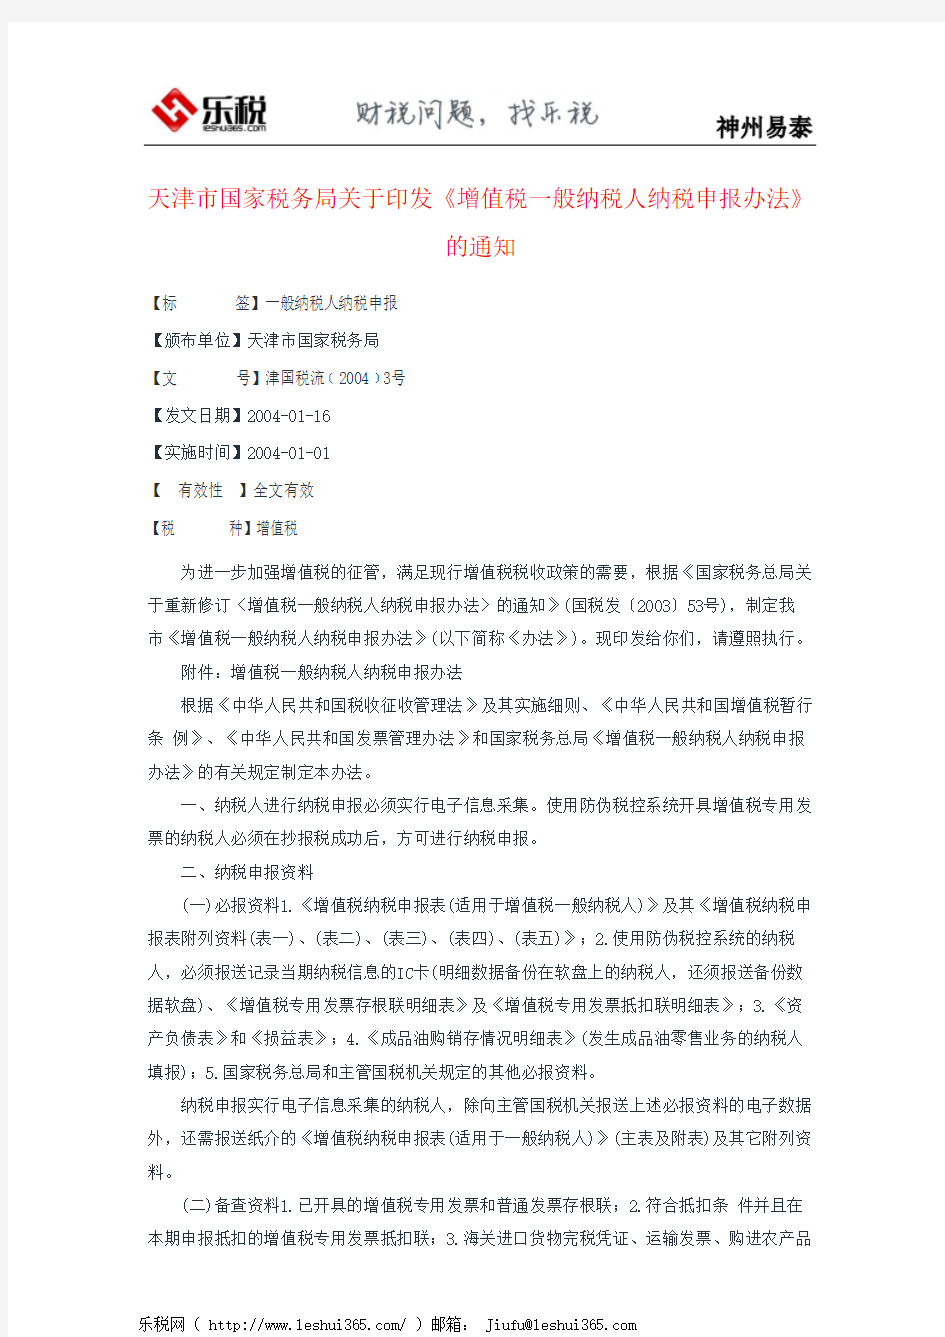 天津市国家税务局关于印发《增值税一般纳税人纳税申报办法》的通知